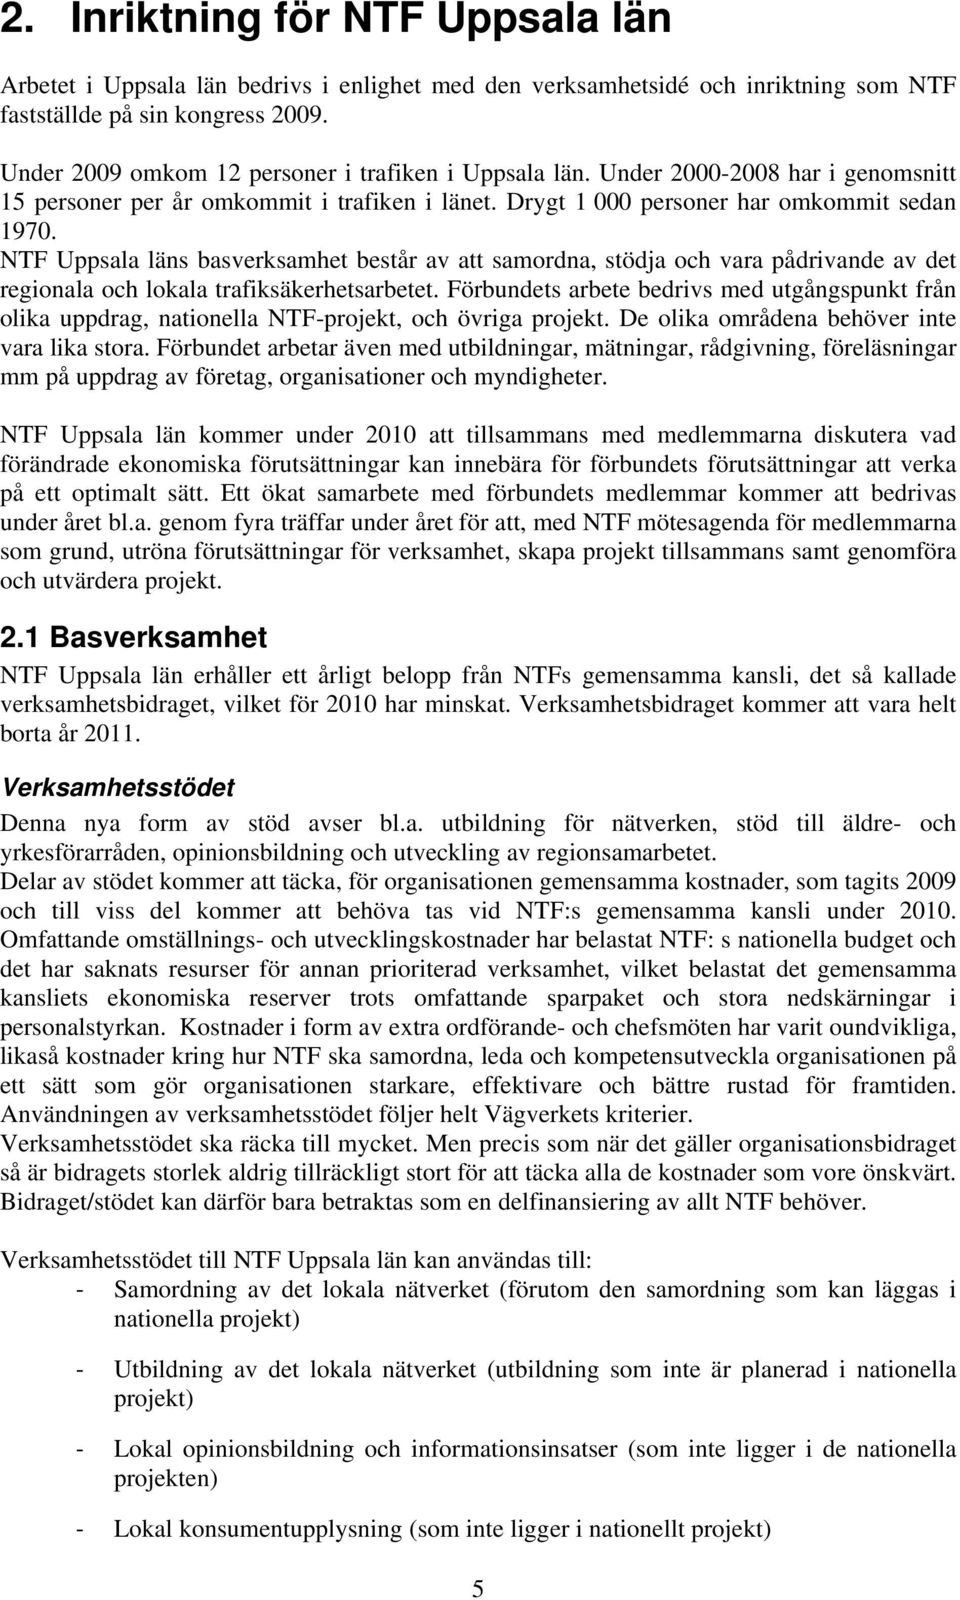 NTF Uppsala läns basverksamhet består av att samordna, stödja och vara pådrivande av det regionala och lokala trafiksäkerhetsarbetet.